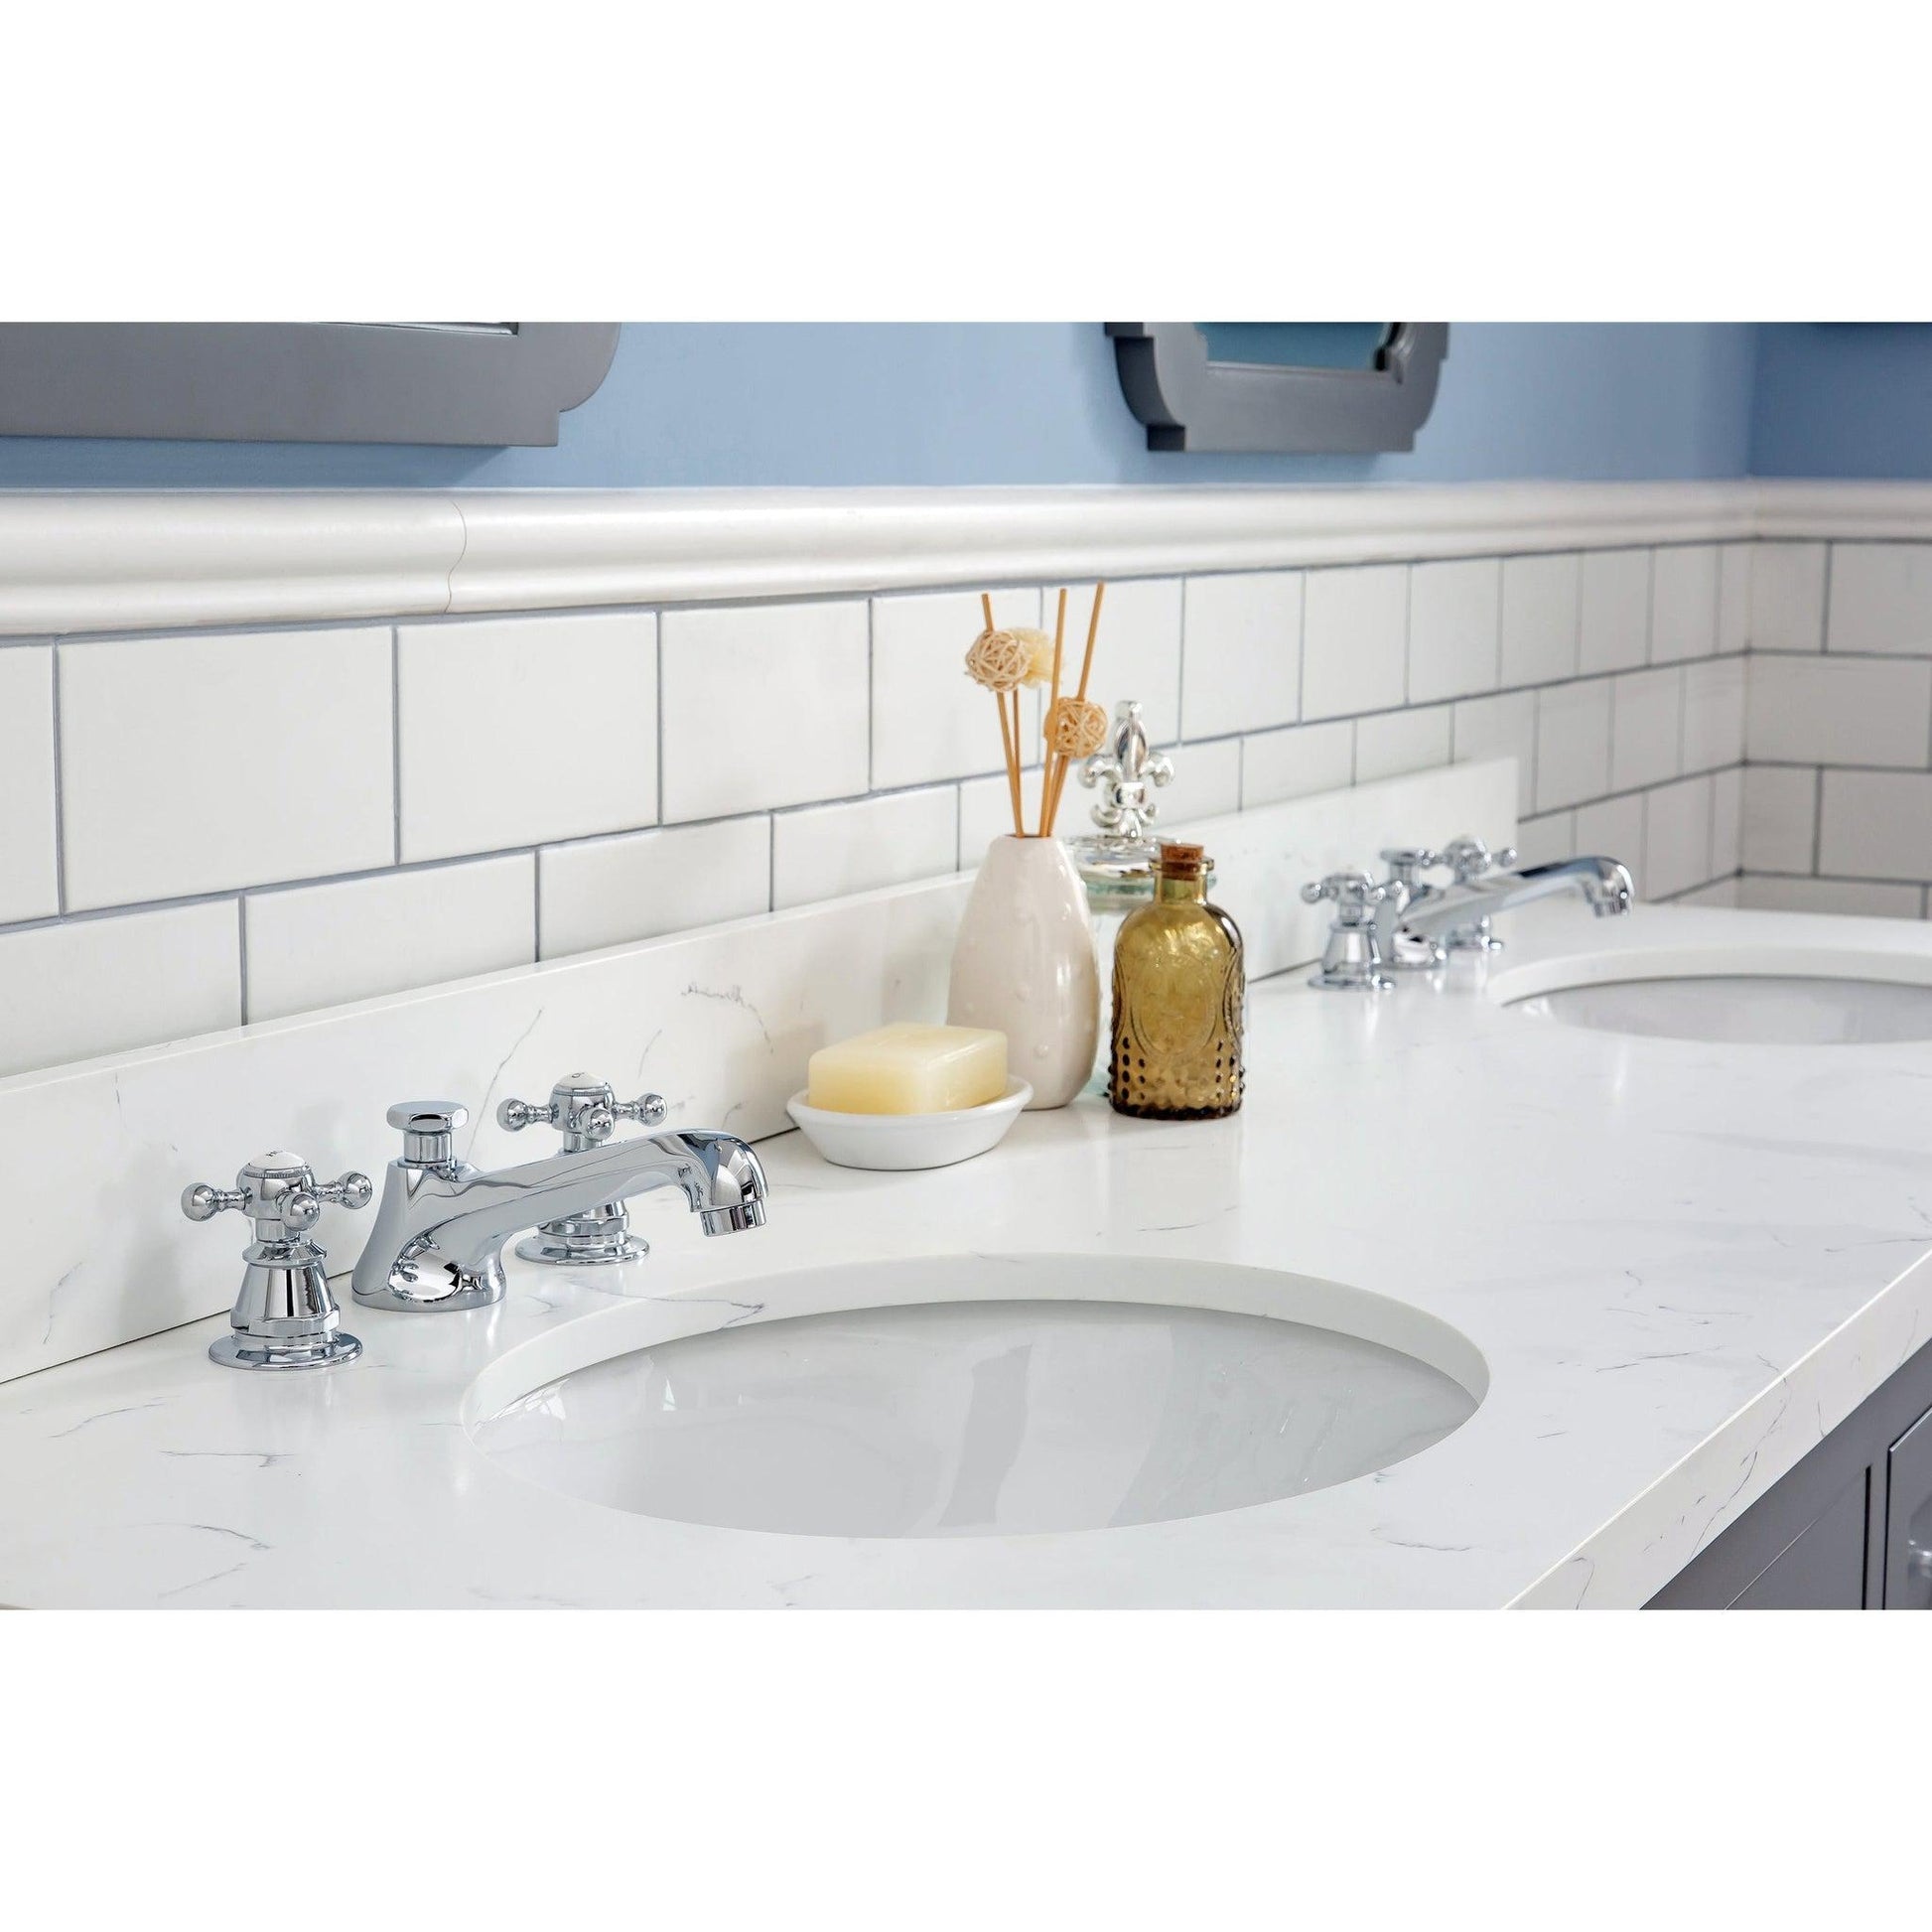 Water Creation Queen 72" Double Sink Quartz Carrara Vanity In Cashmere Grey